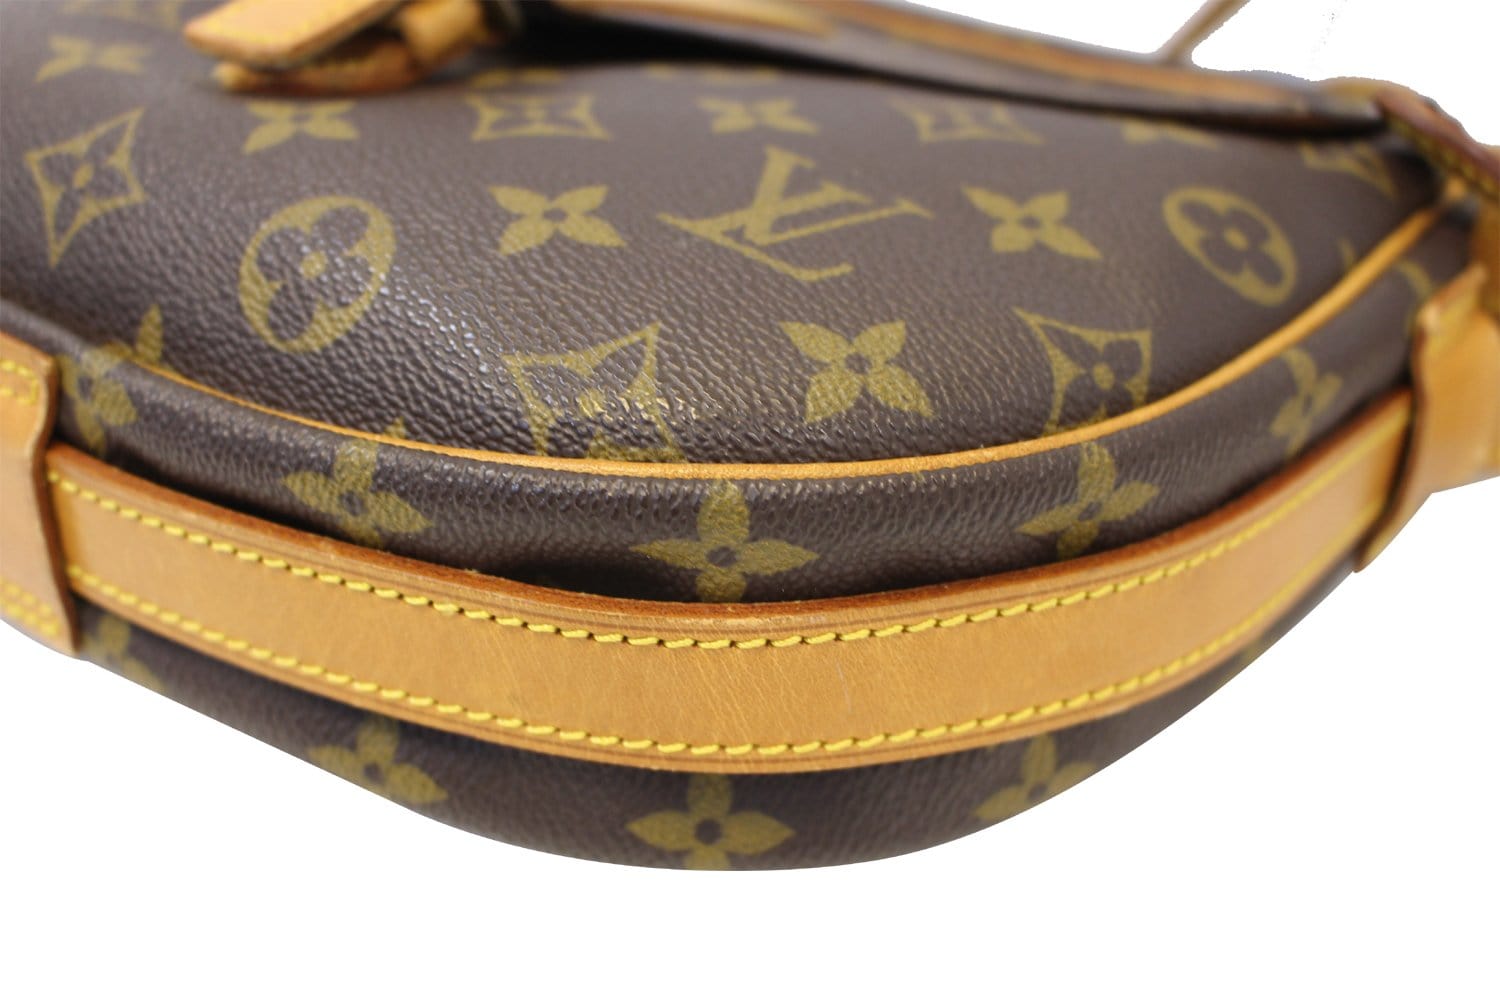 Louis Vuitton Monogram Jeune Fille GM Shoulder Bag Brown - $1089